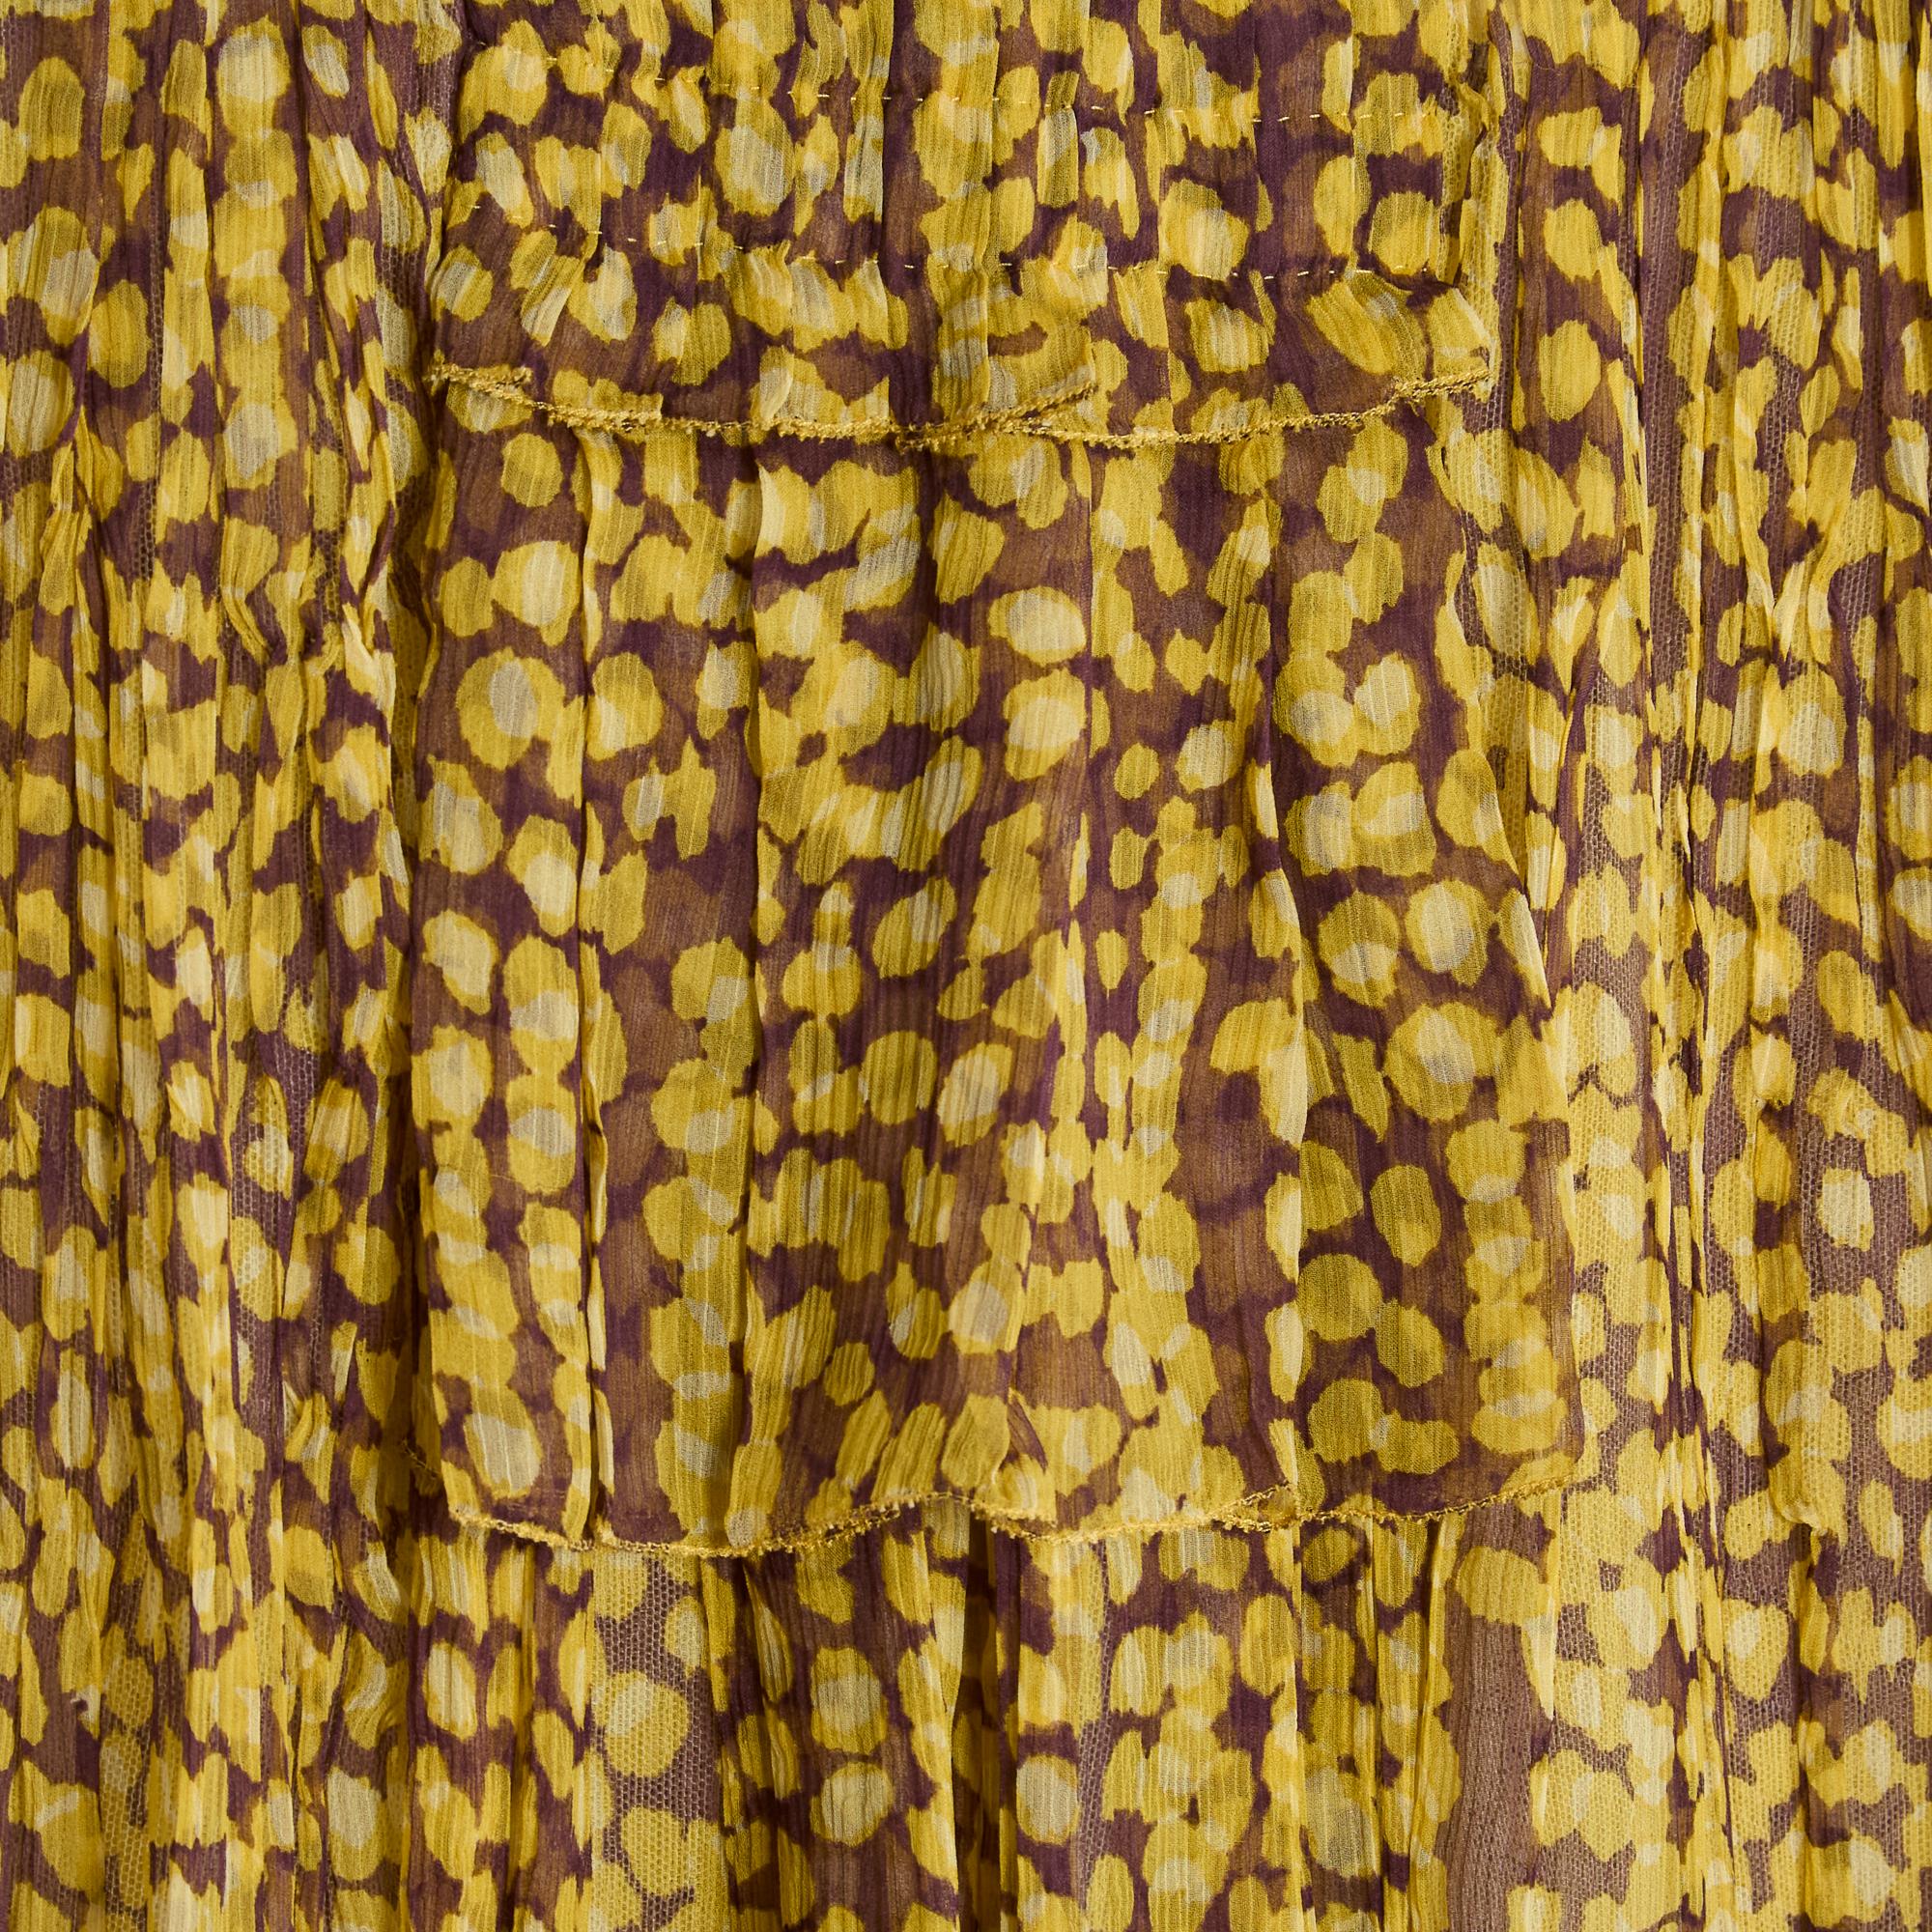 Louis Vuitton mittelkurzer Rock aus gepunktetem Seidenchiffon in Gelb-, Grün- und Brauntönen, unregelmäßige Minifalte, 2 kleine Faltenpassepartouts auf der Vorderseite, Ripsband, blassgelbes Tüllfutter, Verschluss mit langem Reißverschluss mit